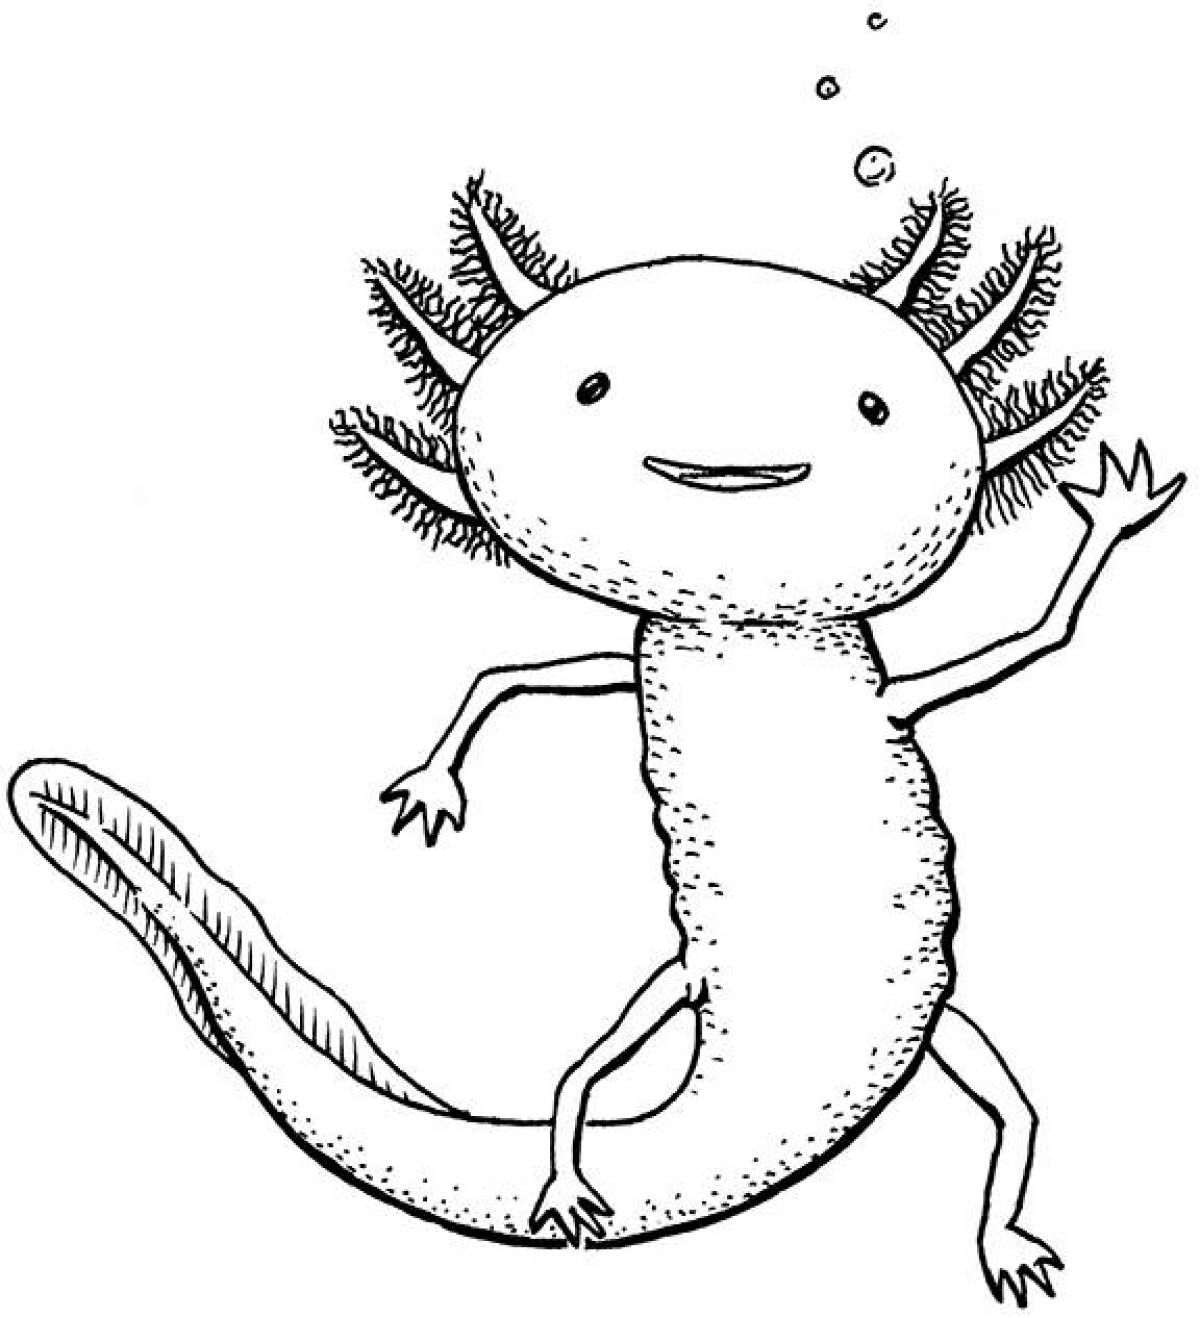 Axolotl #1